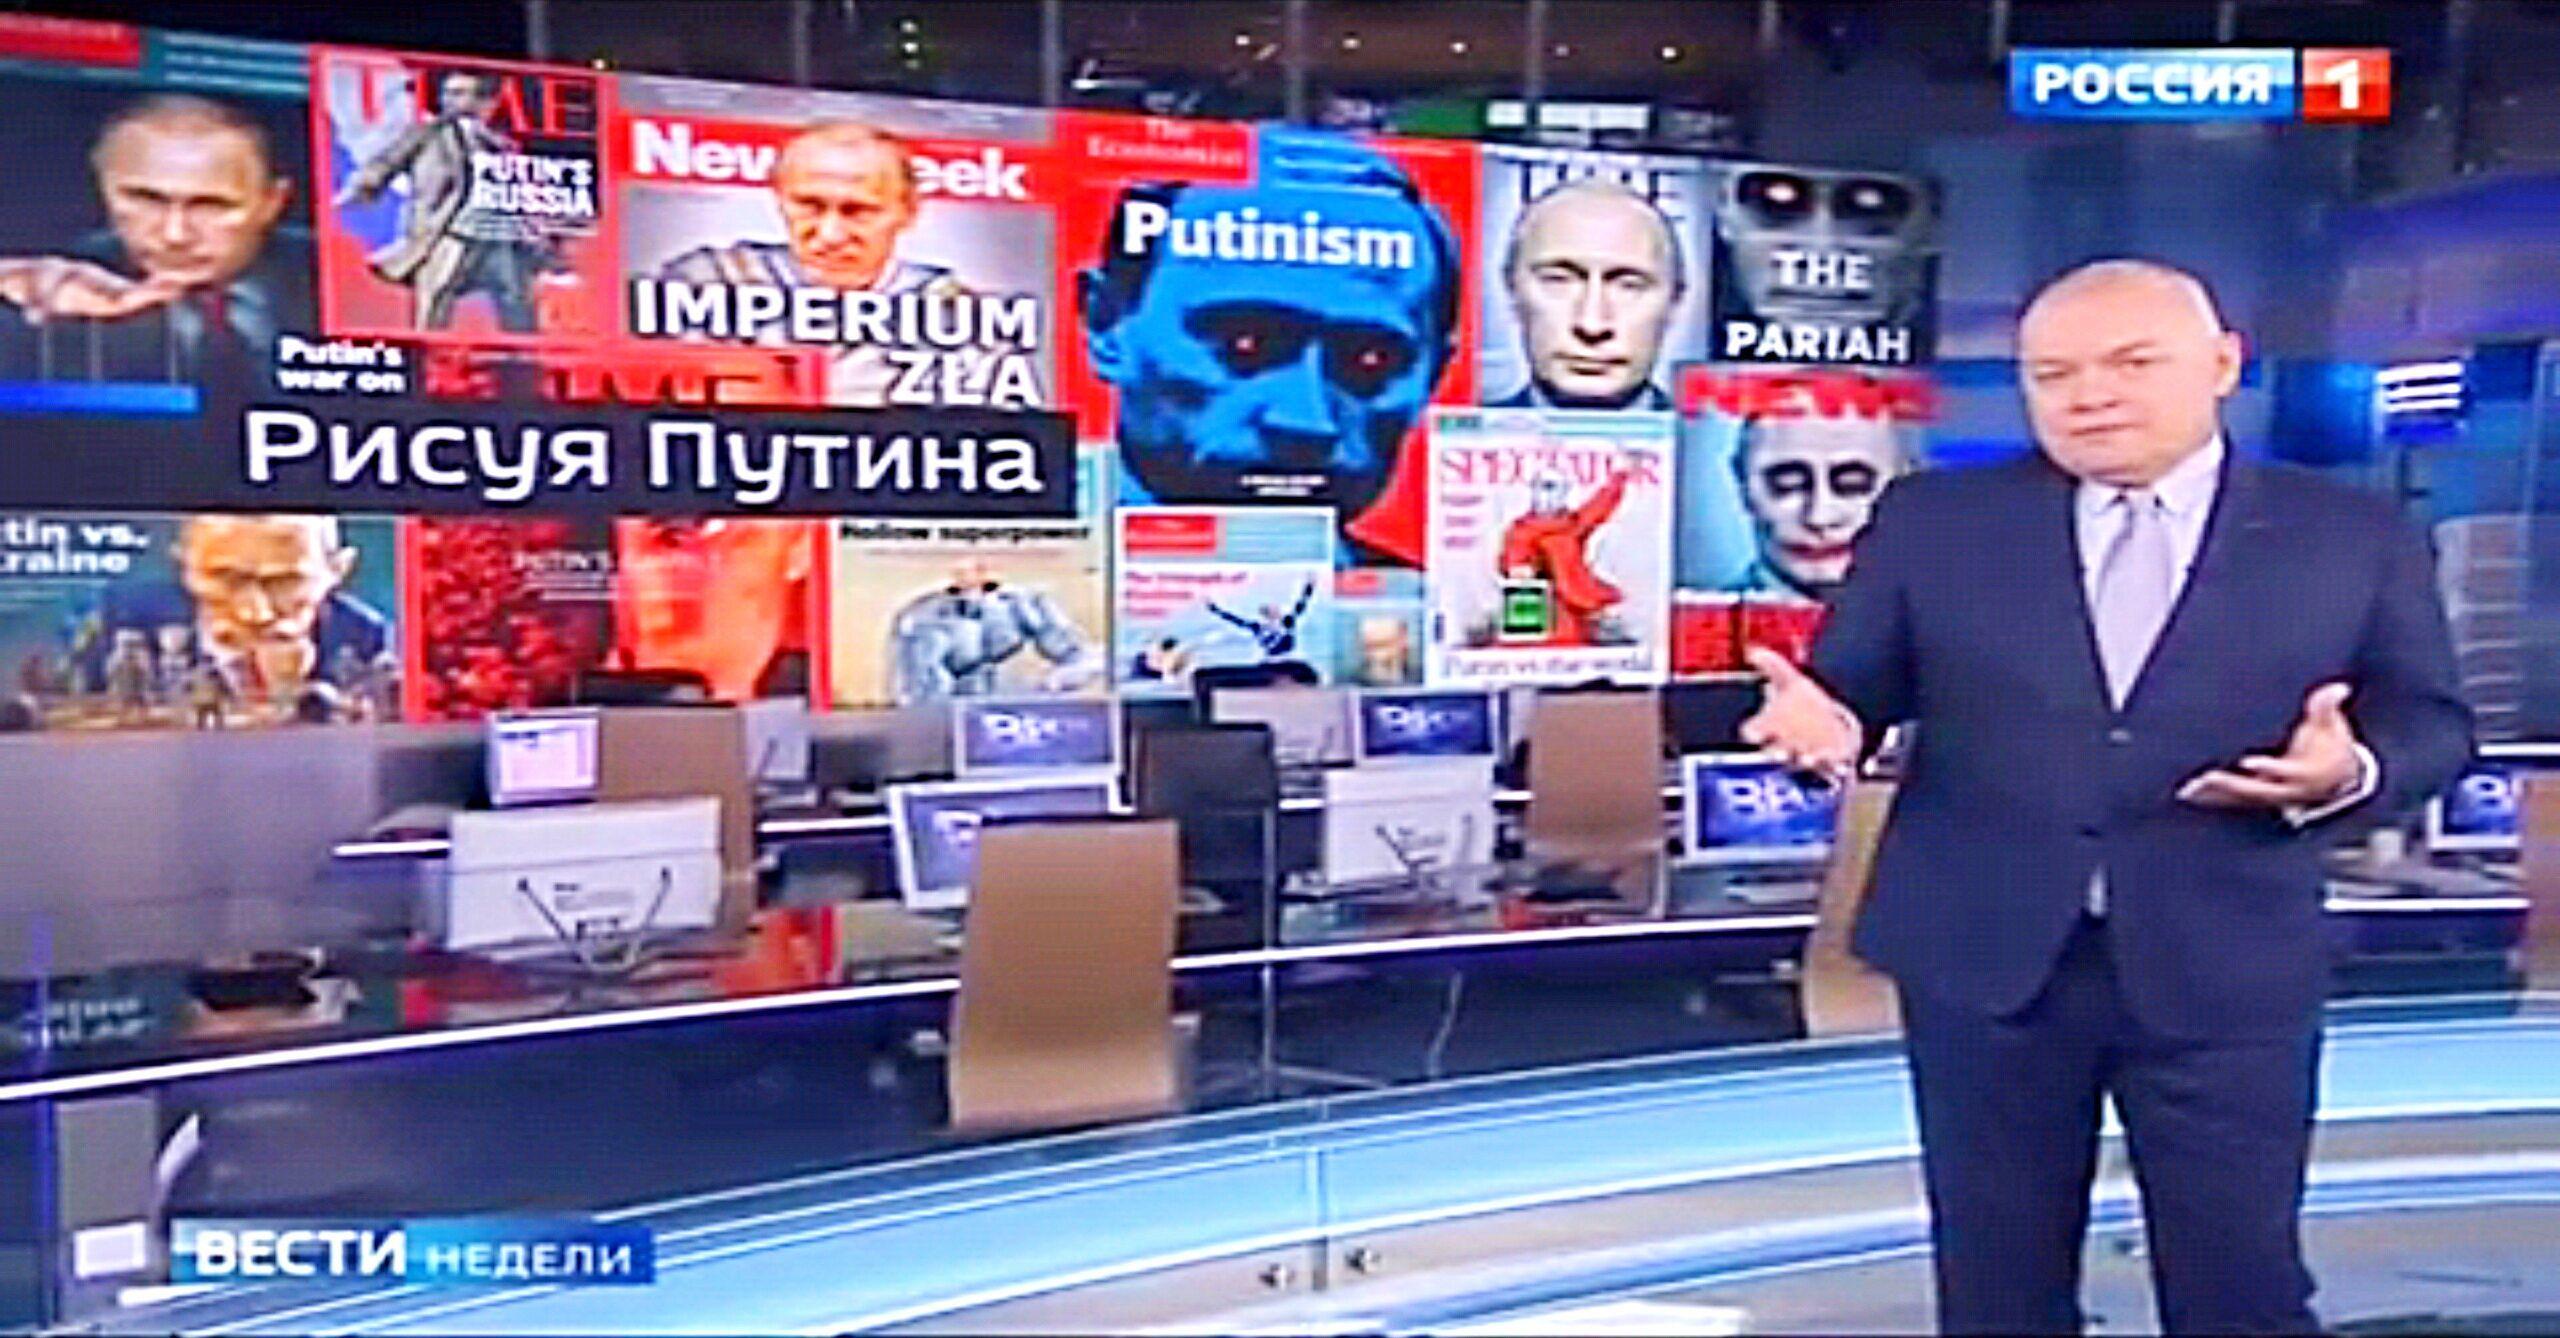 Russian media